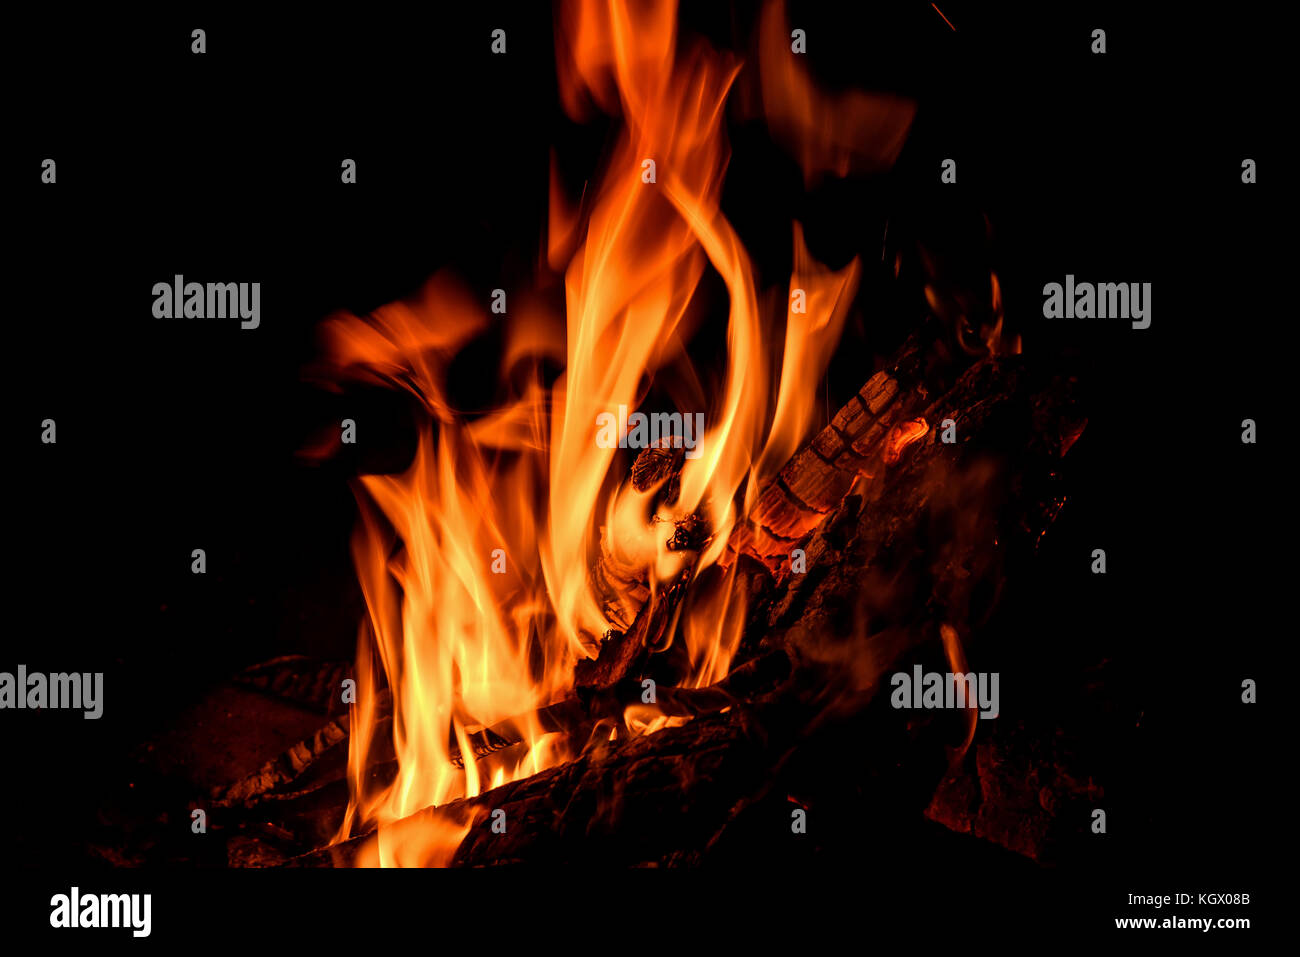 Orange et rouge des jaillissements de flammes, de charbon et de bois dans le feu sur un fond noir Banque D'Images